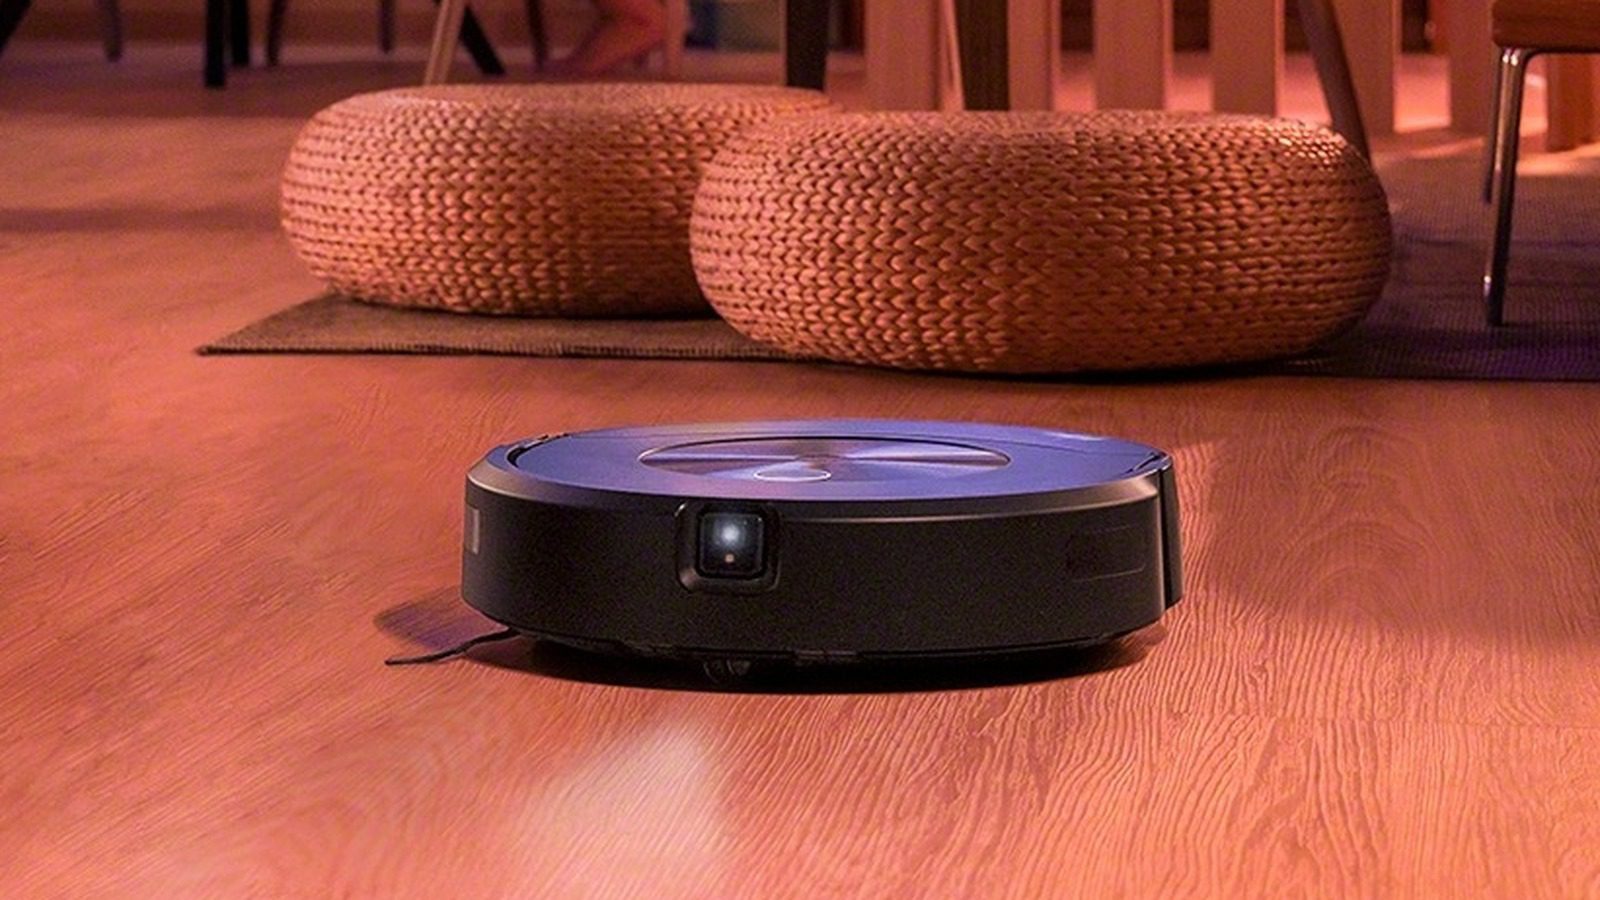 İşte Roomba’nızı Bu Az Bilinen Özelliklere Sahip Bir Güvenlik Kamerası Olarak Nasıl Kullanacağınız